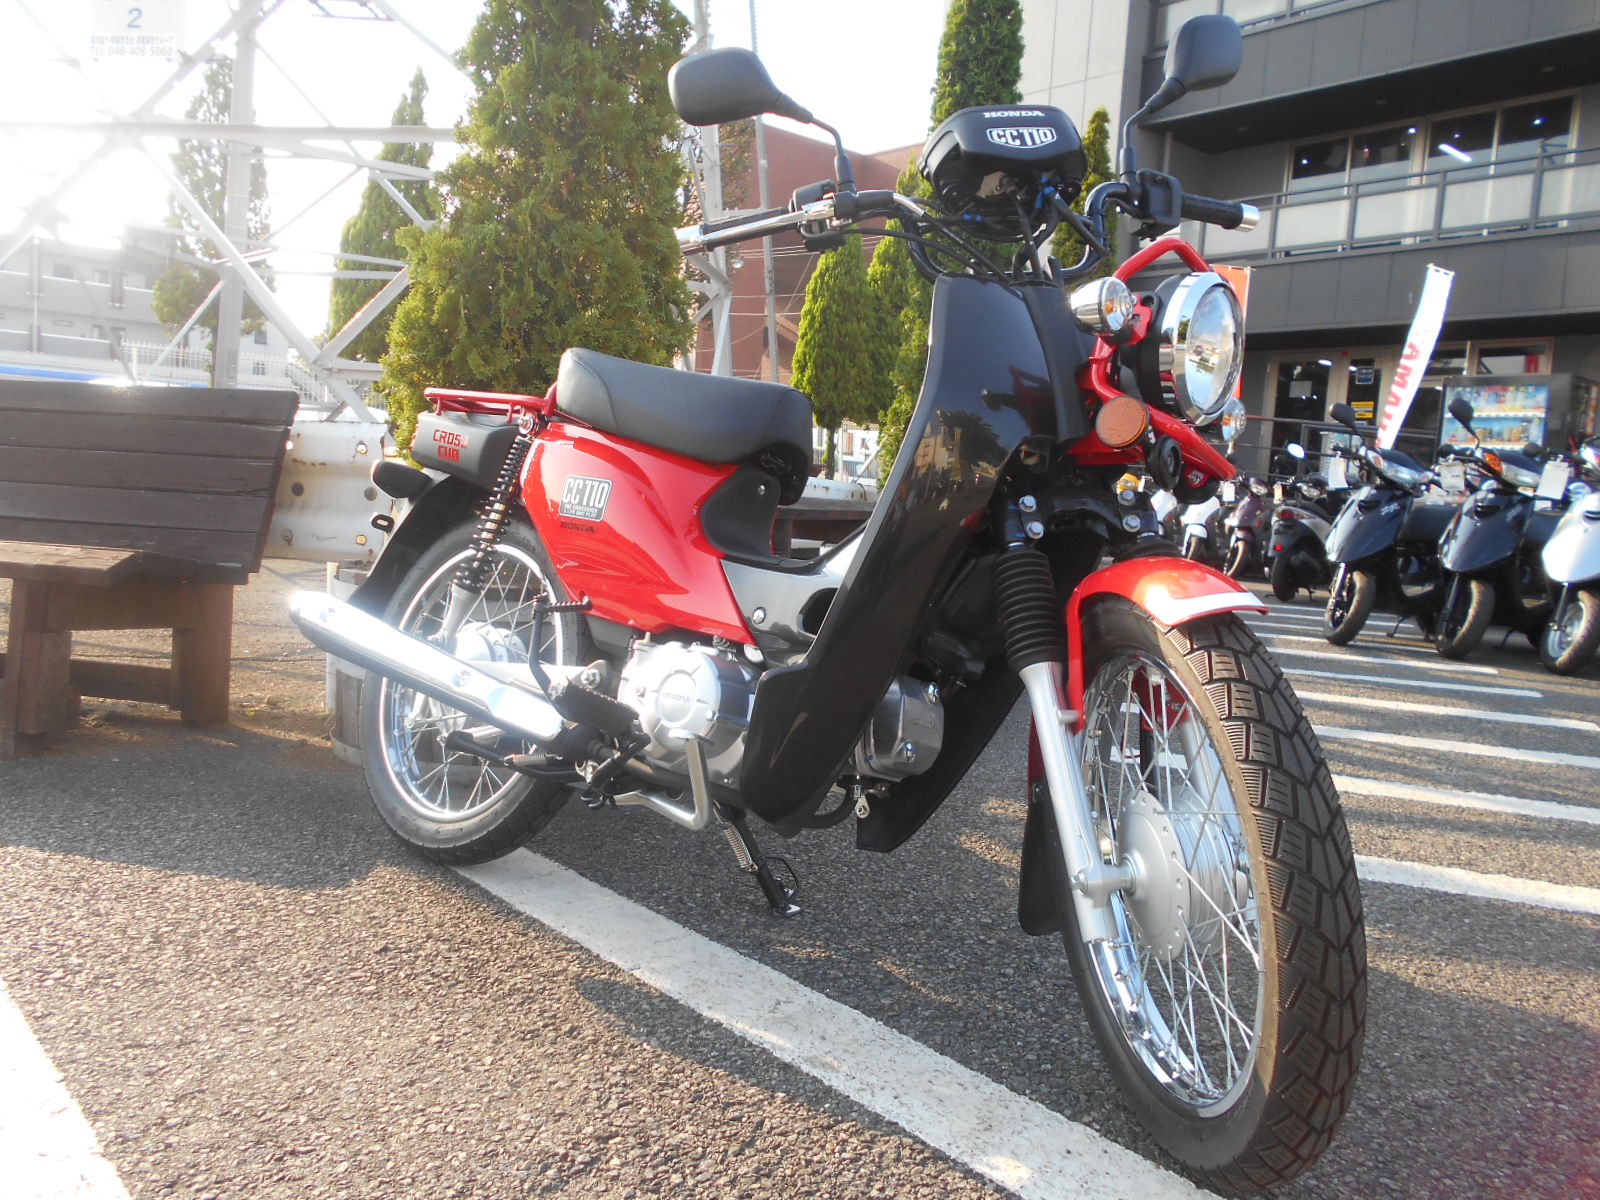 旧型クロスカブ 在庫ございます 最新情報 U Media ユーメディア 中古バイク 新車バイク探しの決定版 神奈川 東京でバイク探すならユーメディア